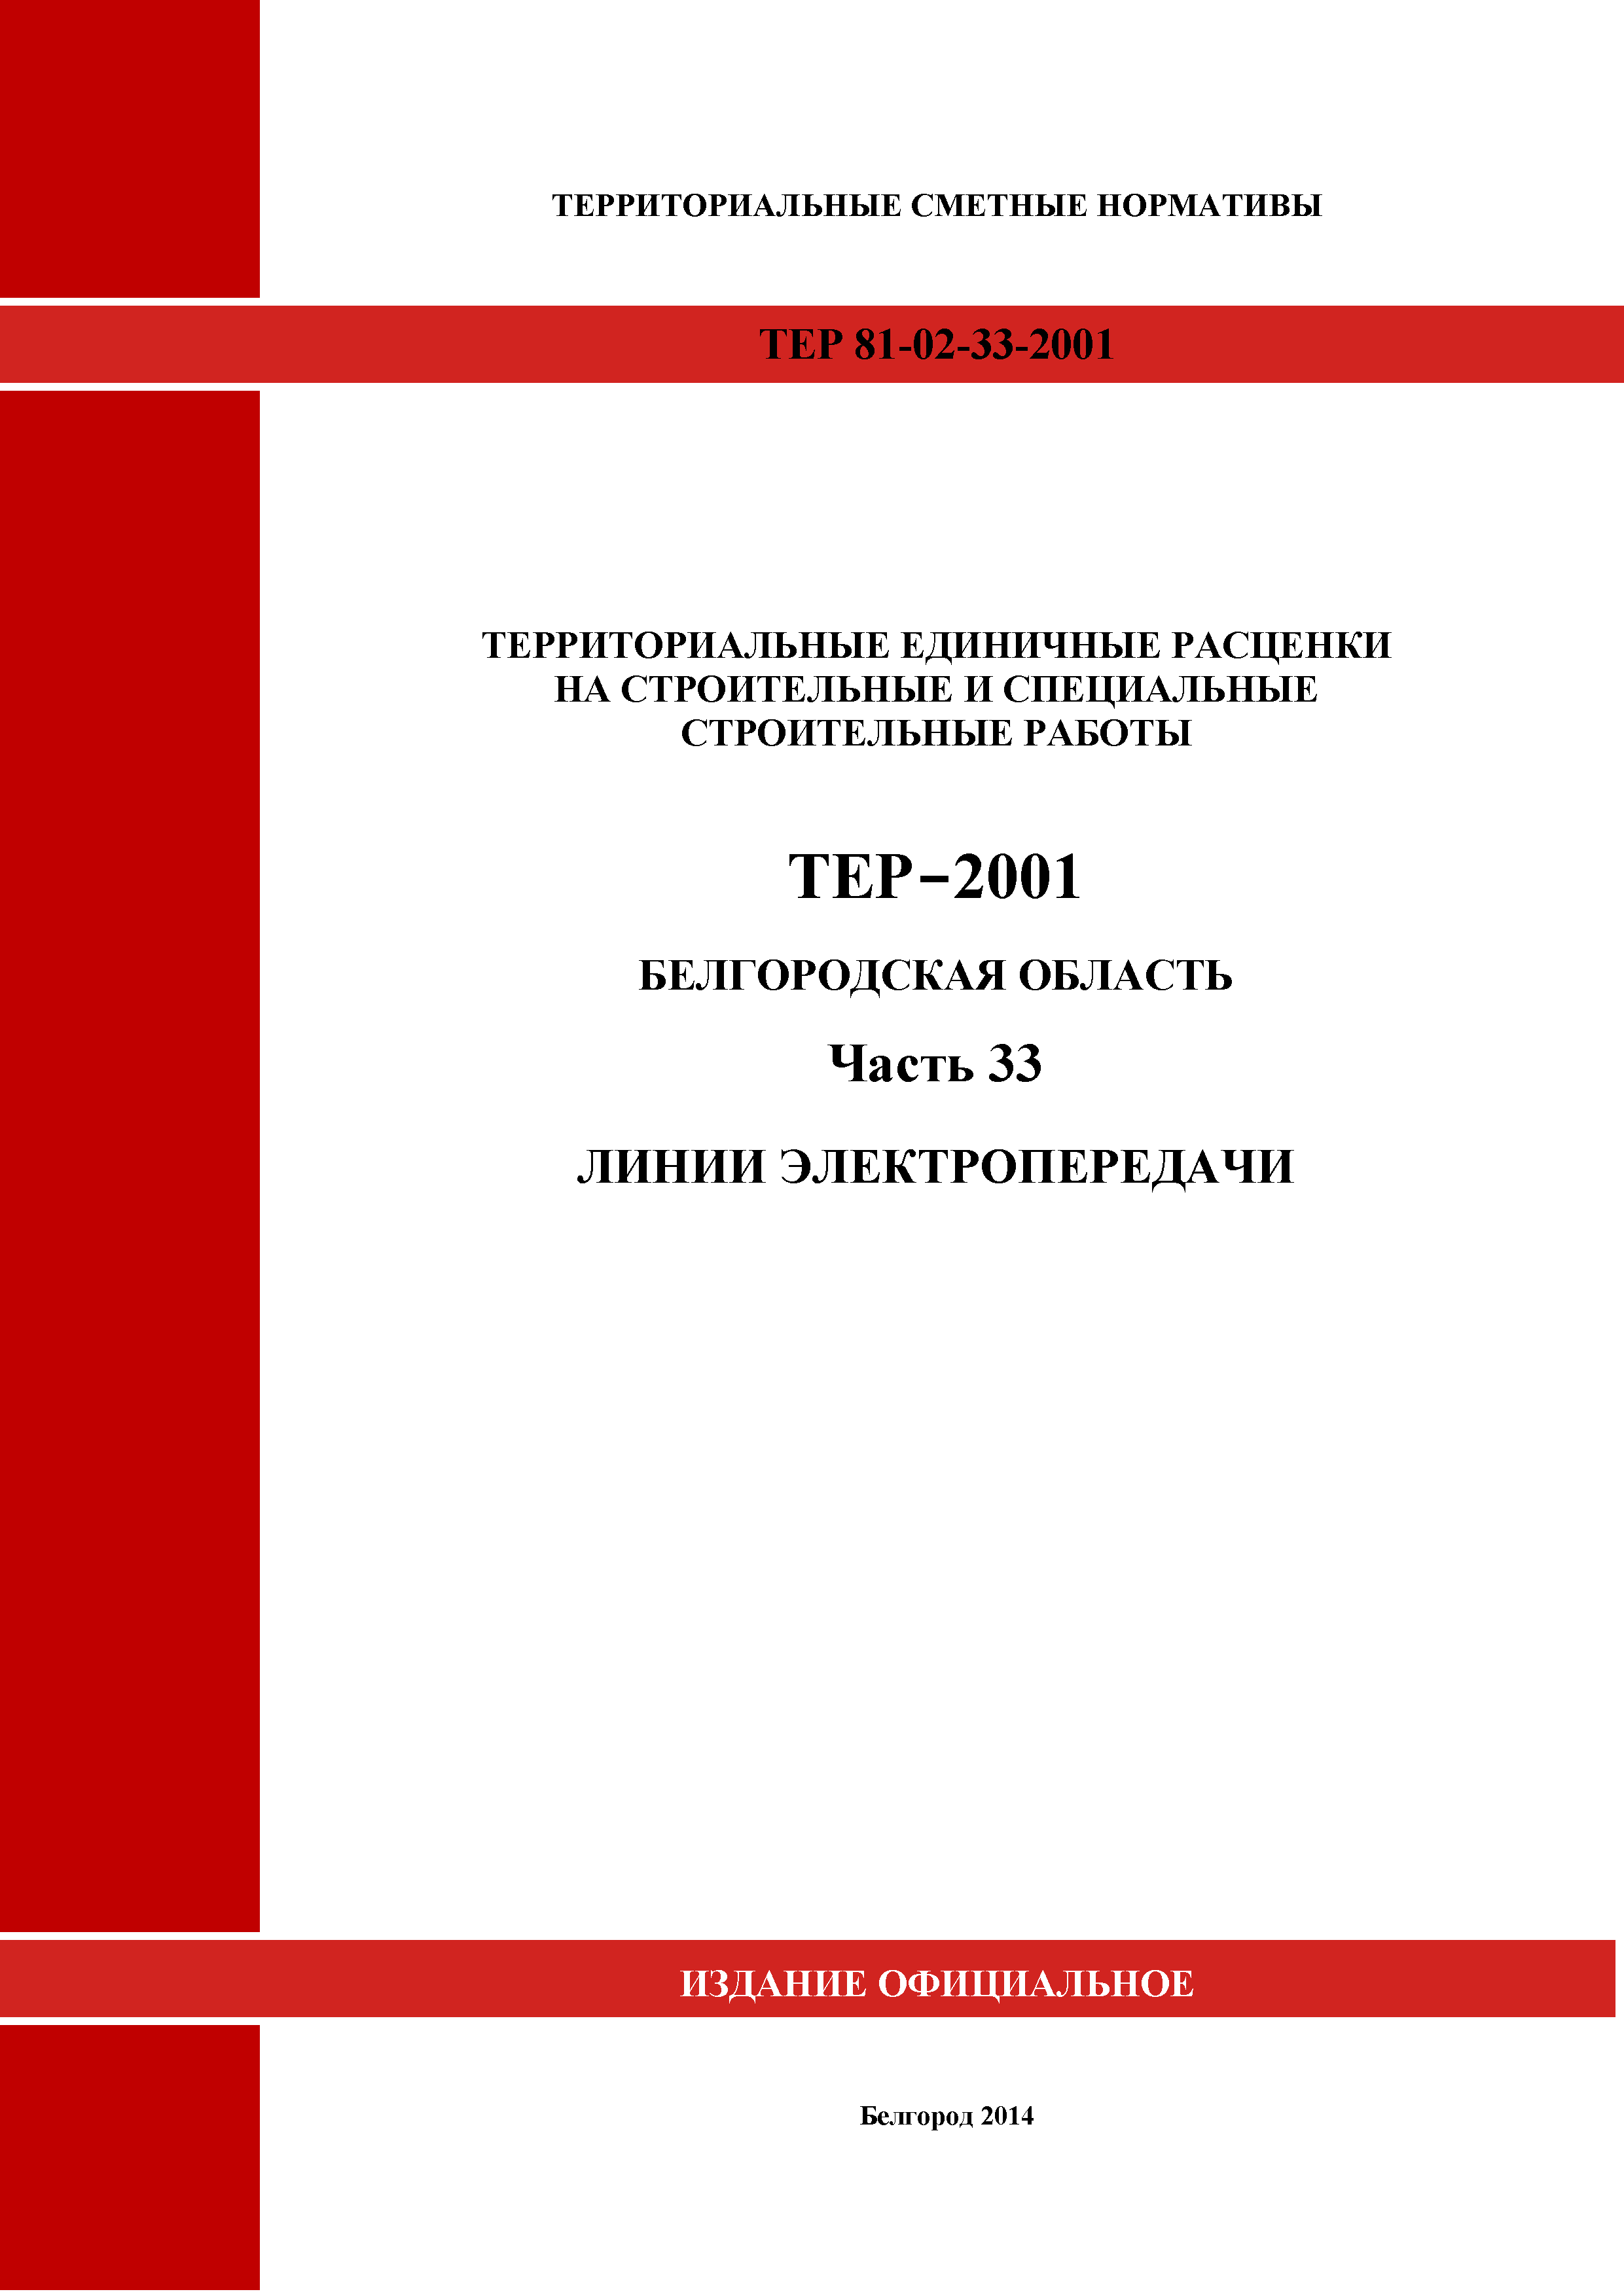 ТЕР Белгородская область 81-02-33-2001